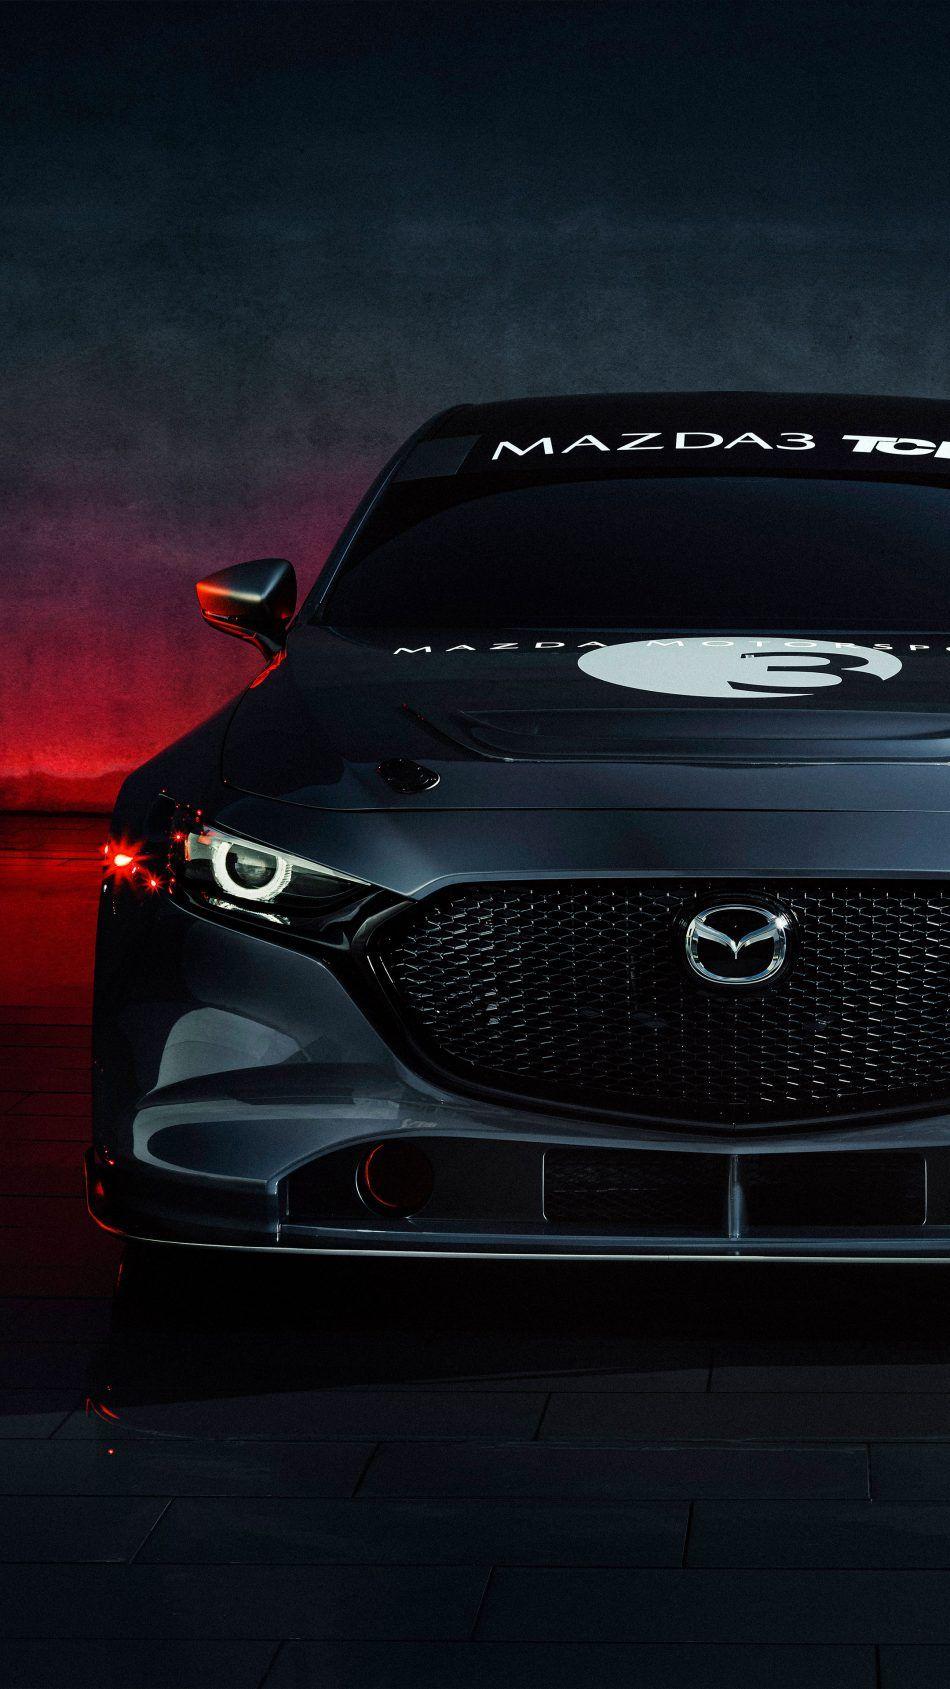 Mazda 3 TCR Race Car 2020 4K Ultra HD Mobile Wallpaper. Mazda Mazda 3 hatchback, Mazda